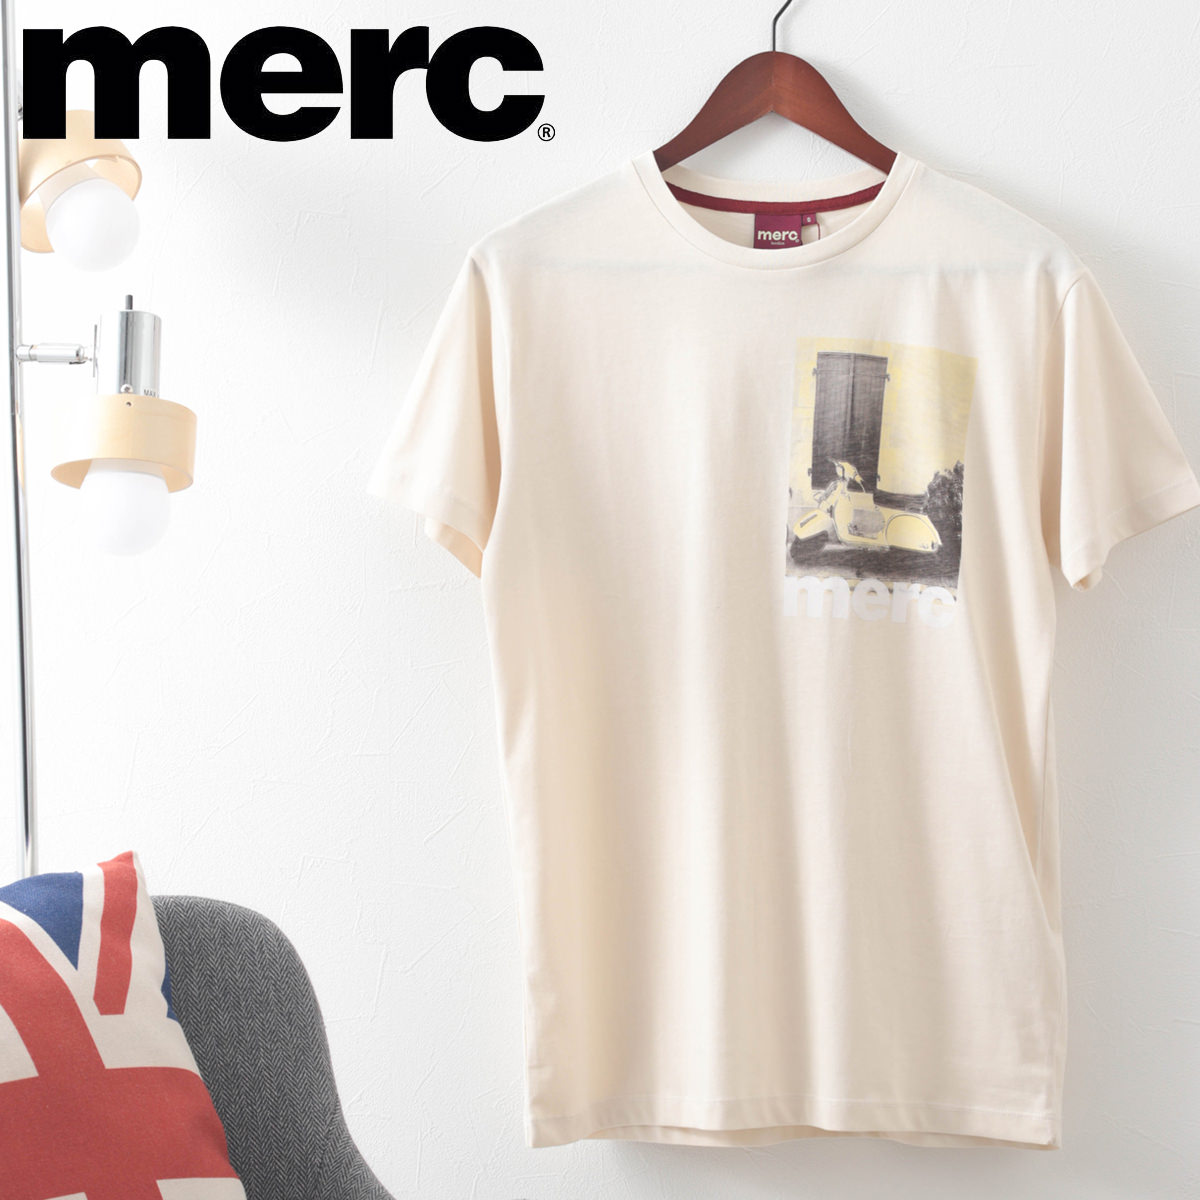 メルクロンドン メンズ Tシャツ スクータープリント Merc London アイボリー レトロ モッズファッション プレゼント ギフト